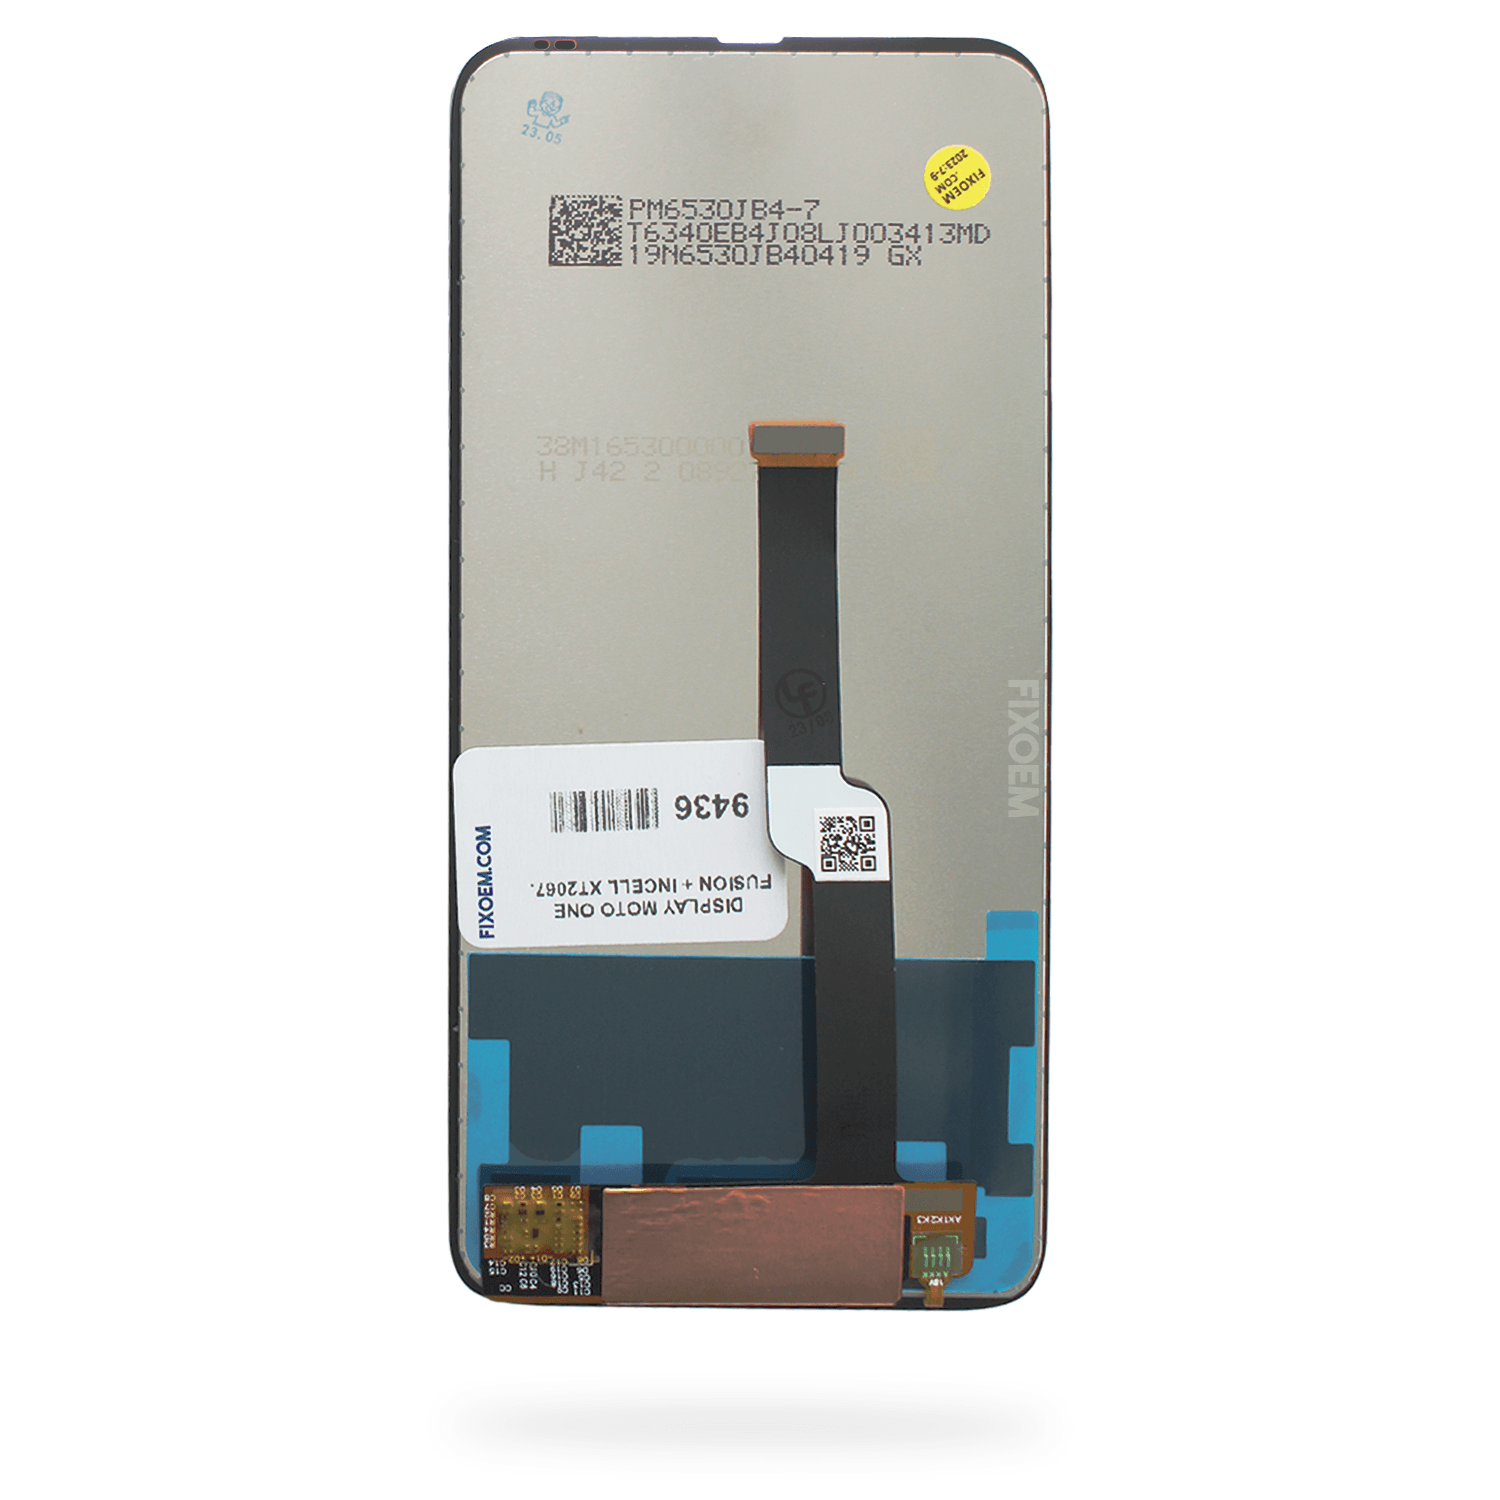 Display Moto One Fusion Plus Ips Xt2067 a solo $ 260.00 Refaccion y puestos celulares, refurbish y microelectronica.- FixOEM